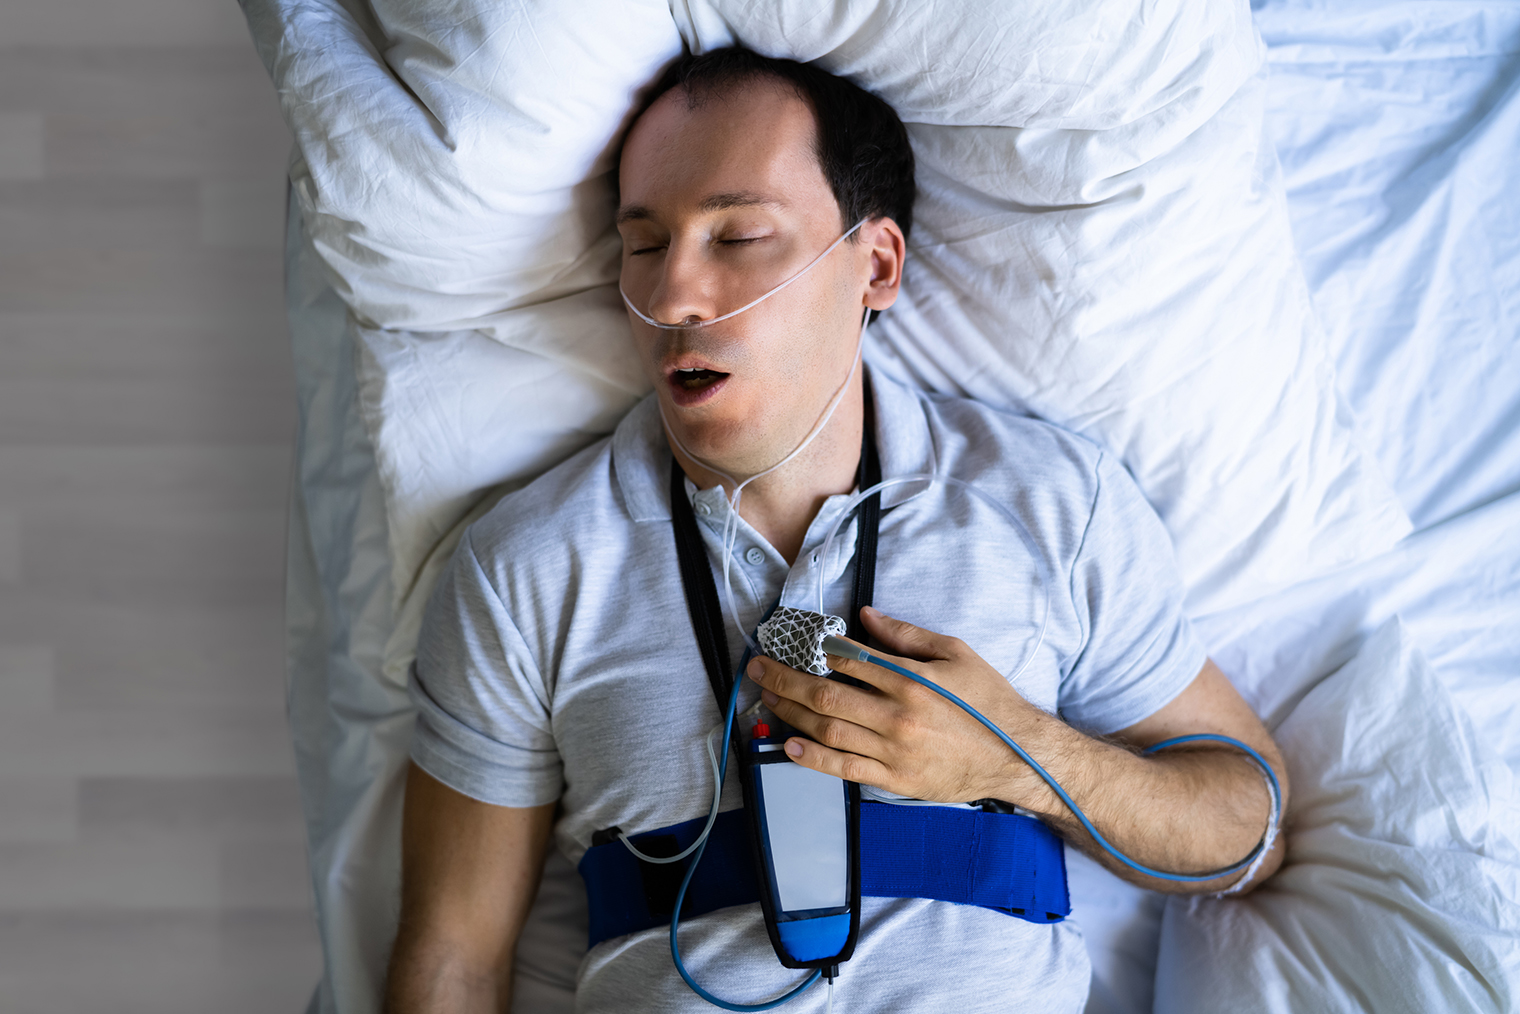 Так выглядит кардиореспираторный ночной мониторинг — исследование, нацеленное на оценку работы сердечно-сосудистой системы во сне и позволяющее диагностировать нарушения сна. Фотография: AndreyPopov / Shutterstock